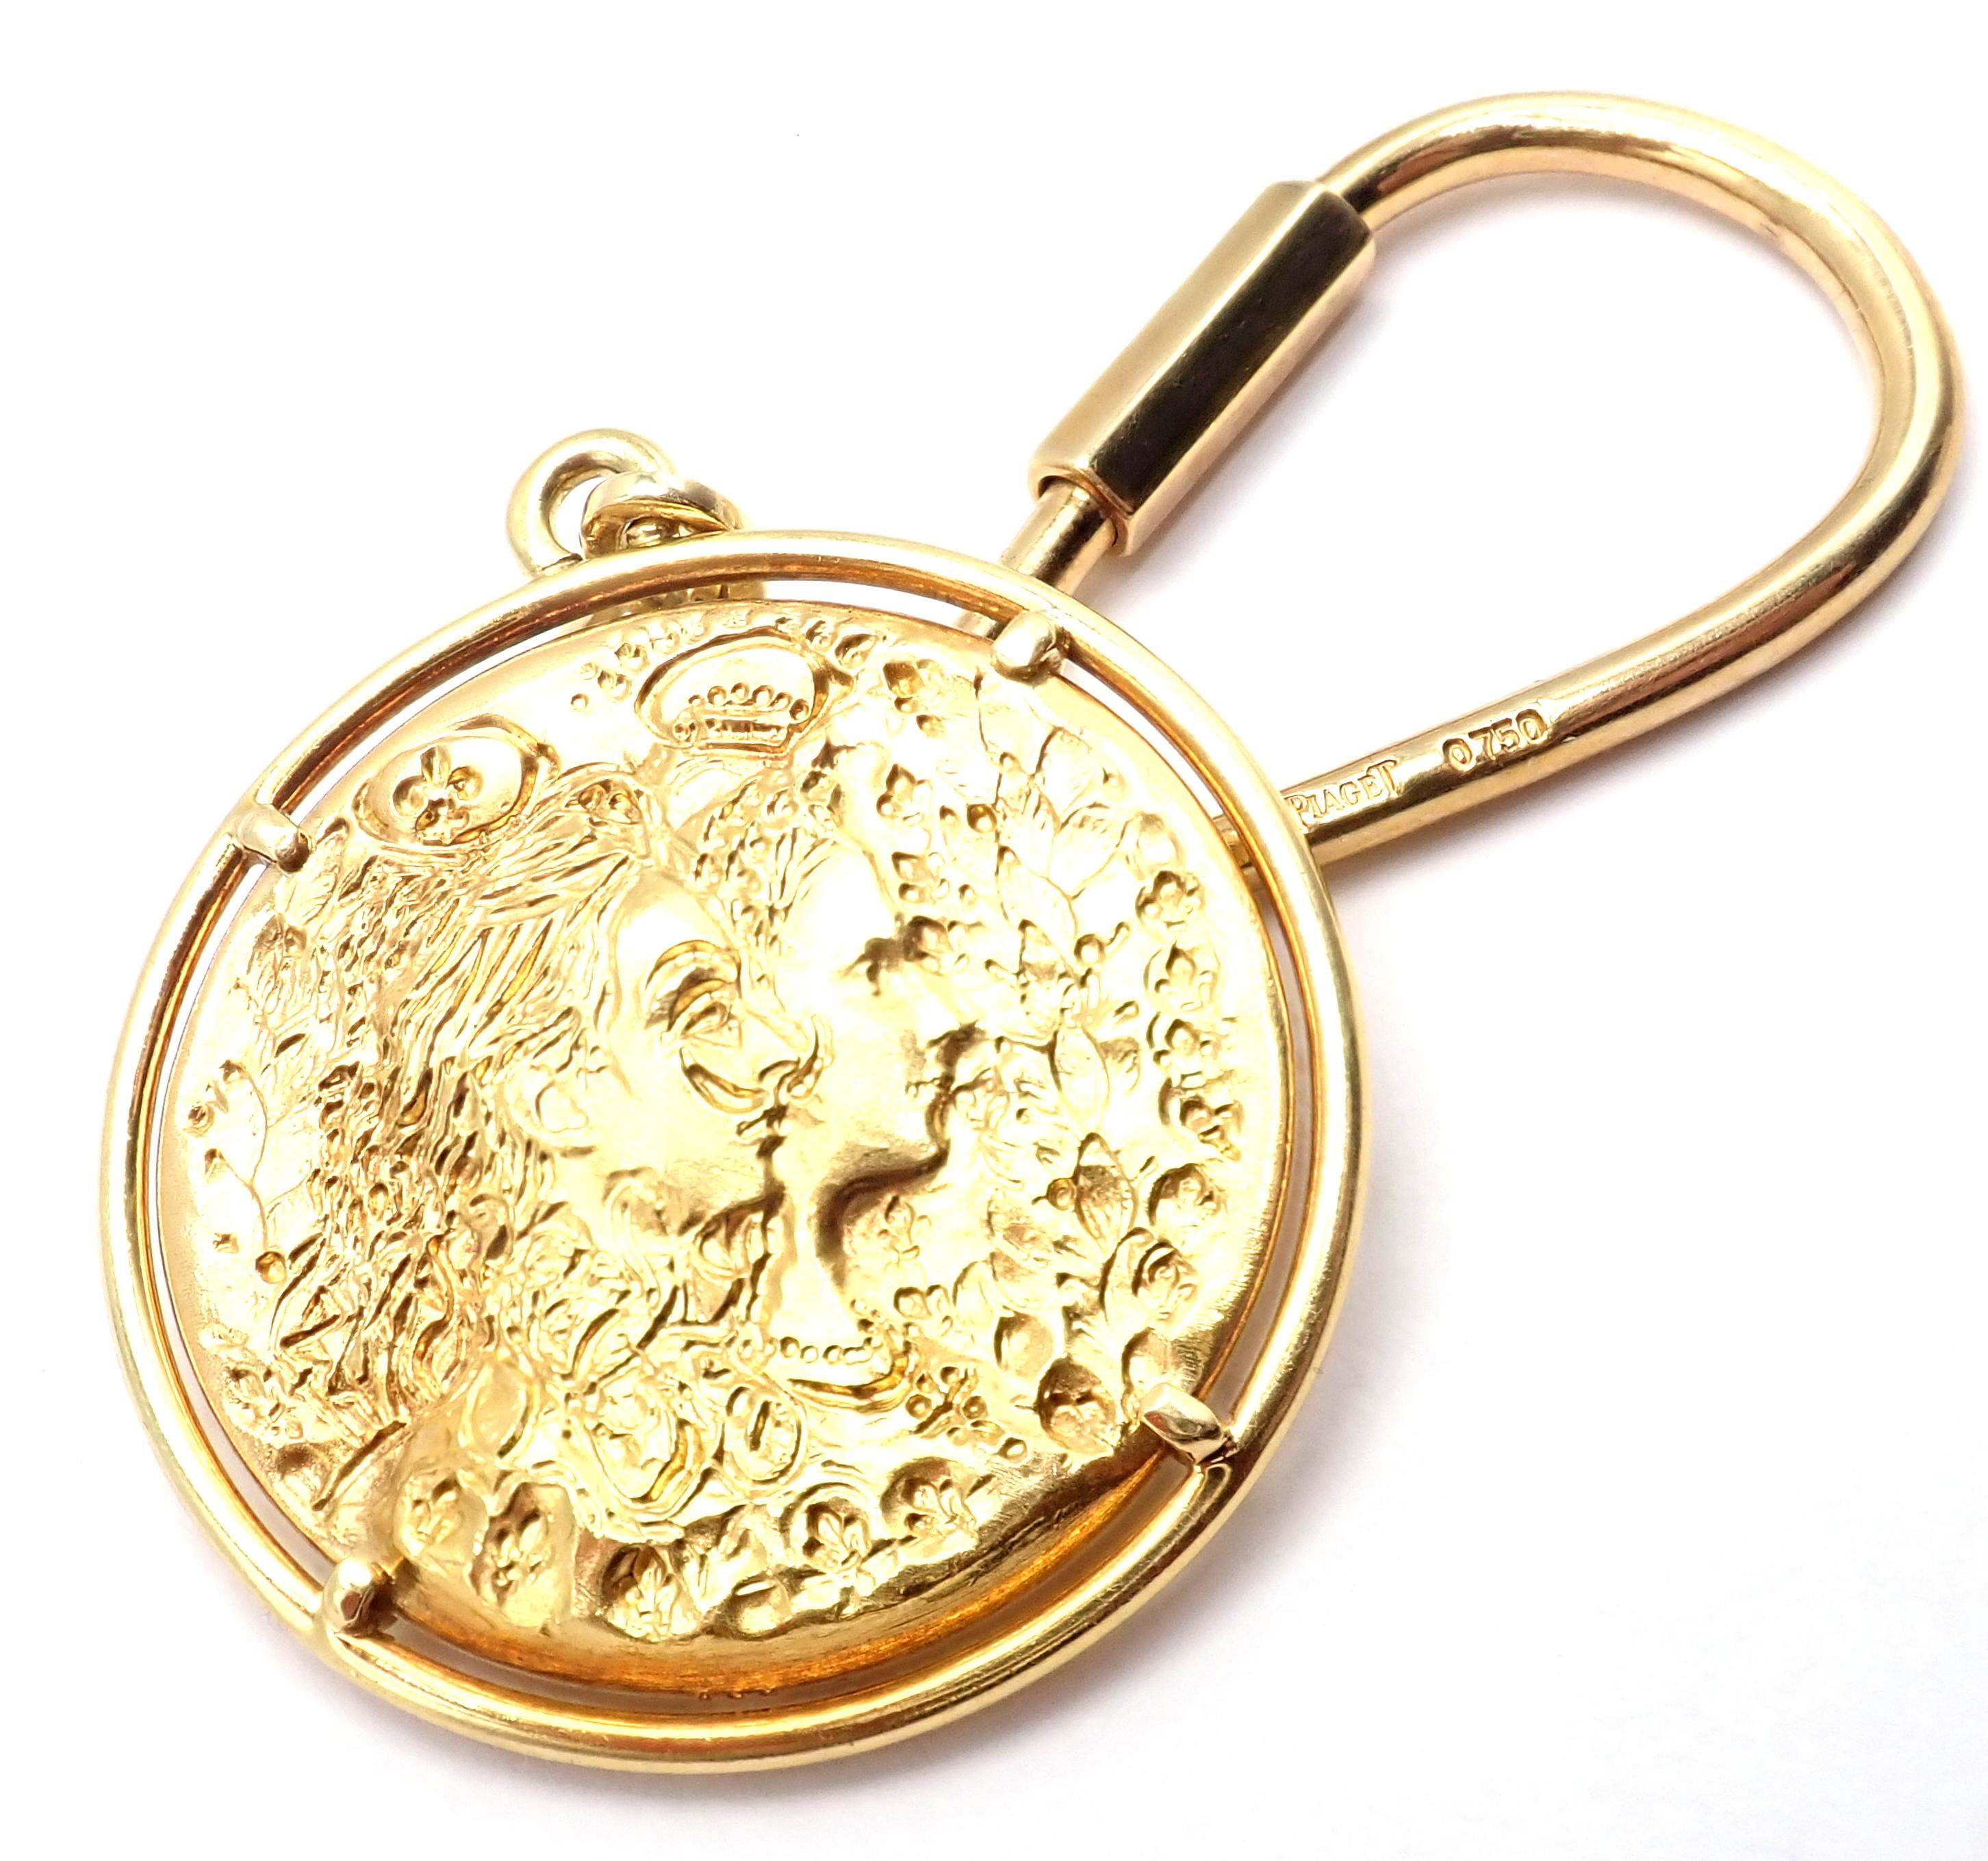 Pièce de monnaie en or jaune 22k et porte-clés en or jaune 18k par Salvador Dali D'or pour Piaget. 
Rarissime porte-clés en pièces d'or jaune 22k conçu par le célèbre peintre surréaliste Salvador Dali. 
Inspiré par son héros, Louis XIV, Dali frappe